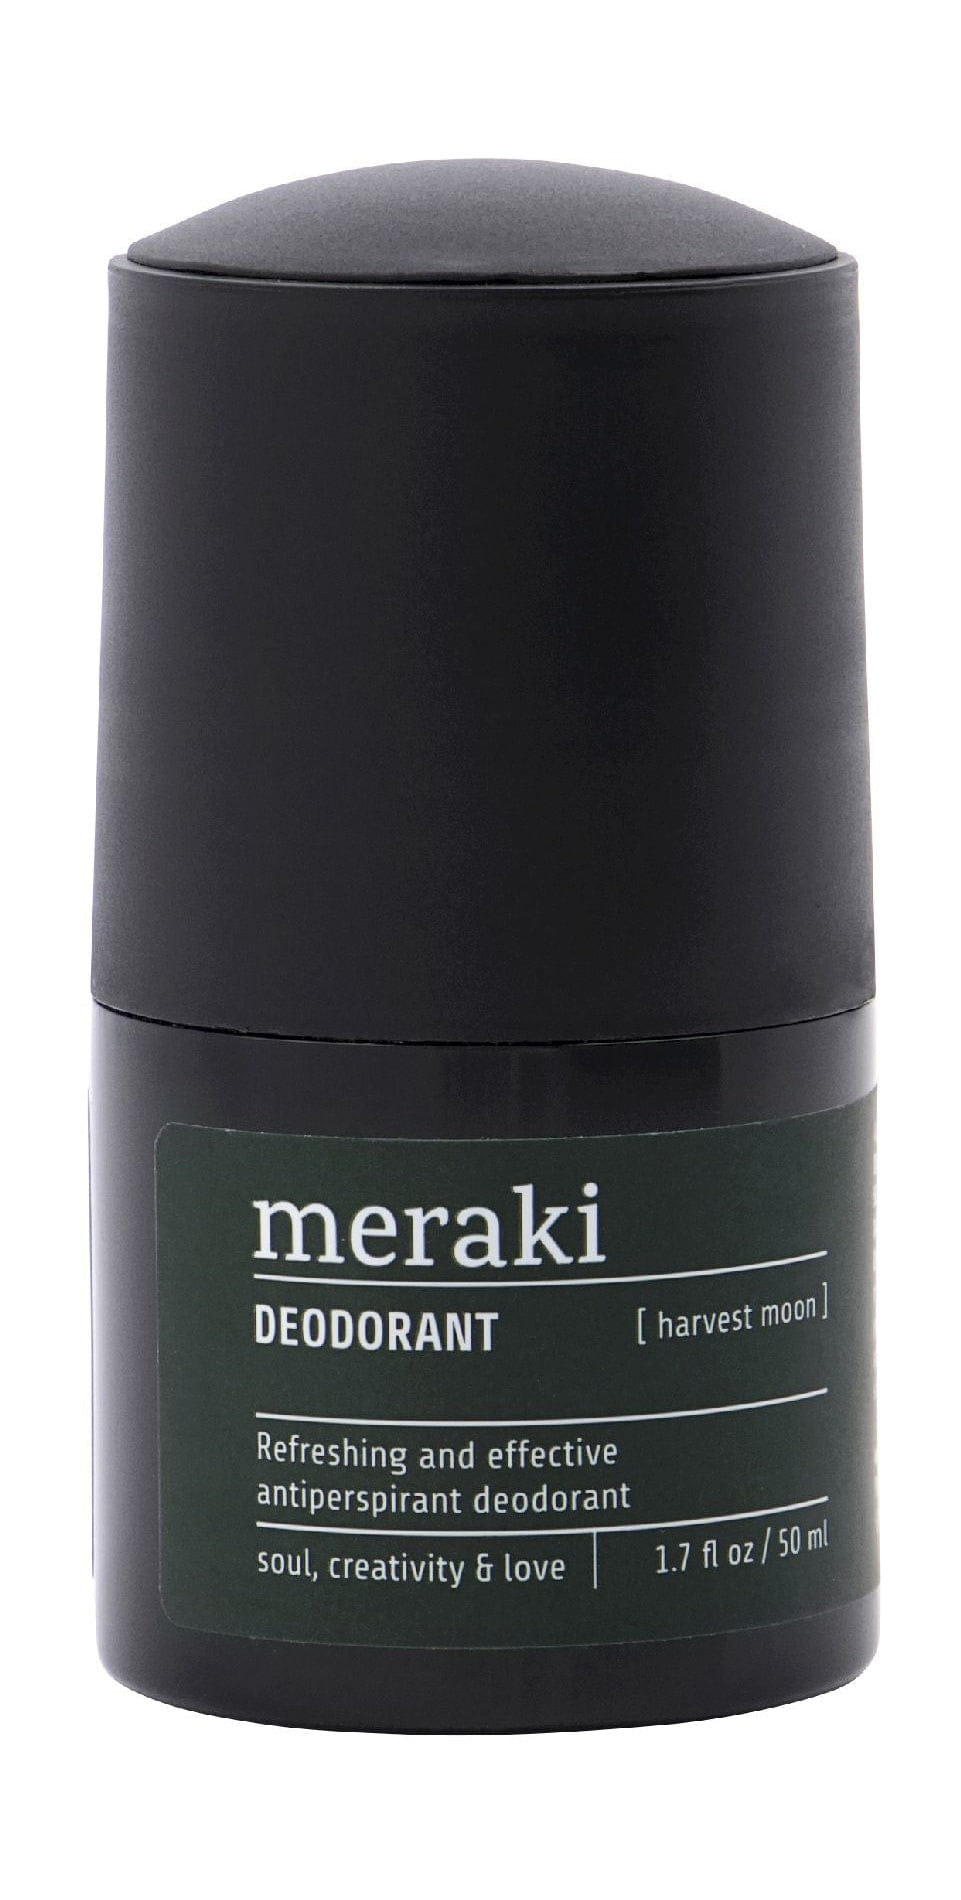 Desodorante de Meraki 50 ml, Harvest Moon